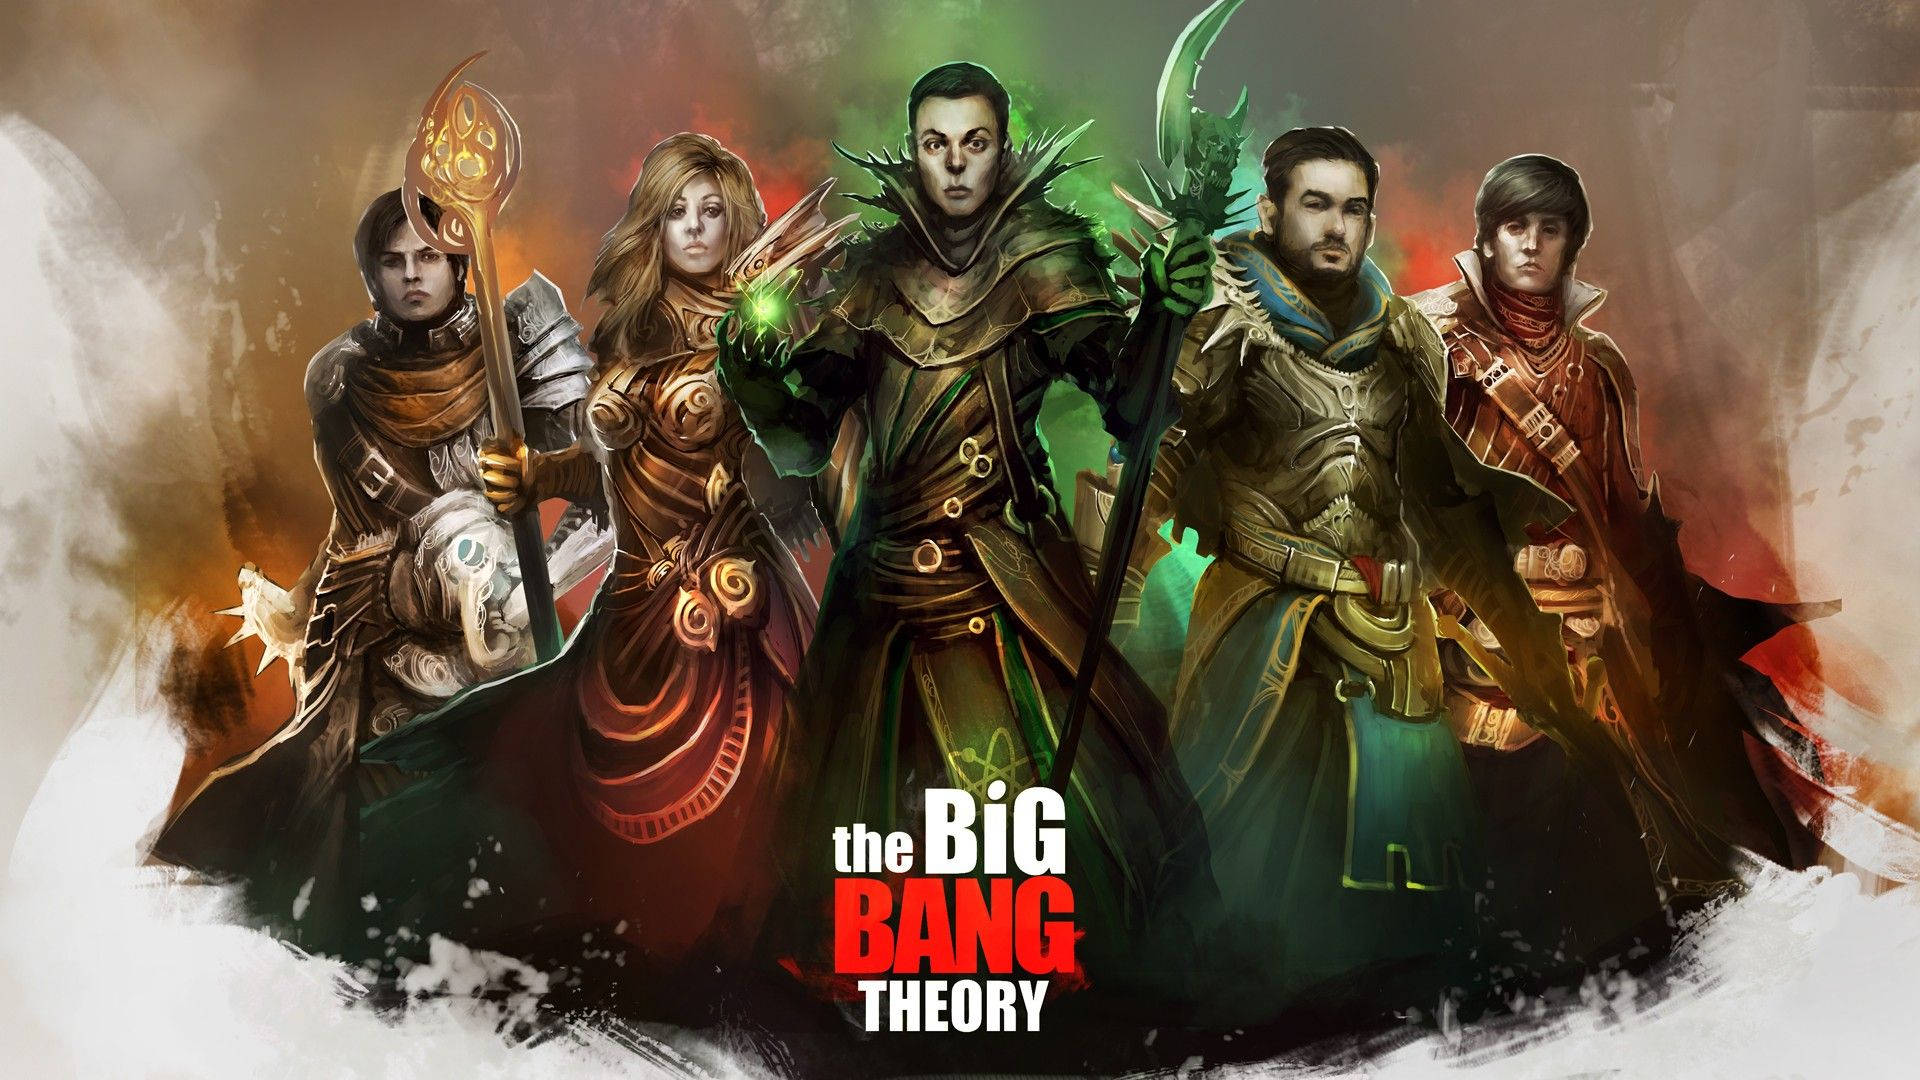 The Big Bang Theory Mystical Characters Wallpaper